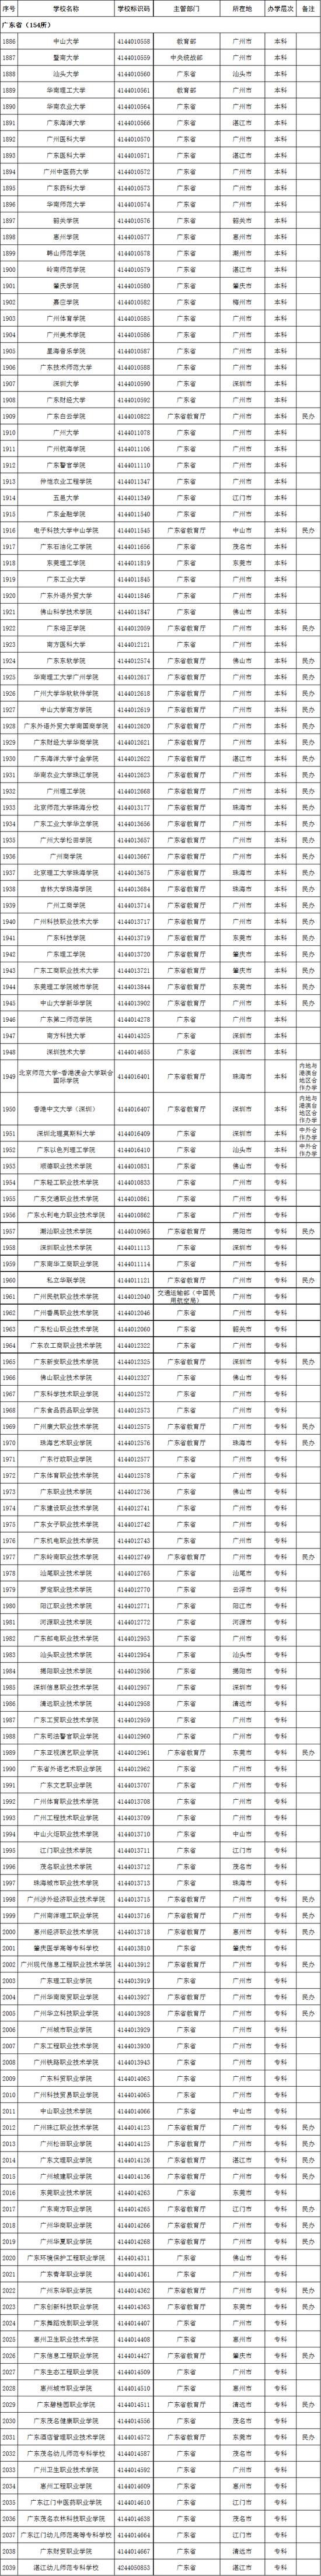 广东省2020年高校名单(154所)